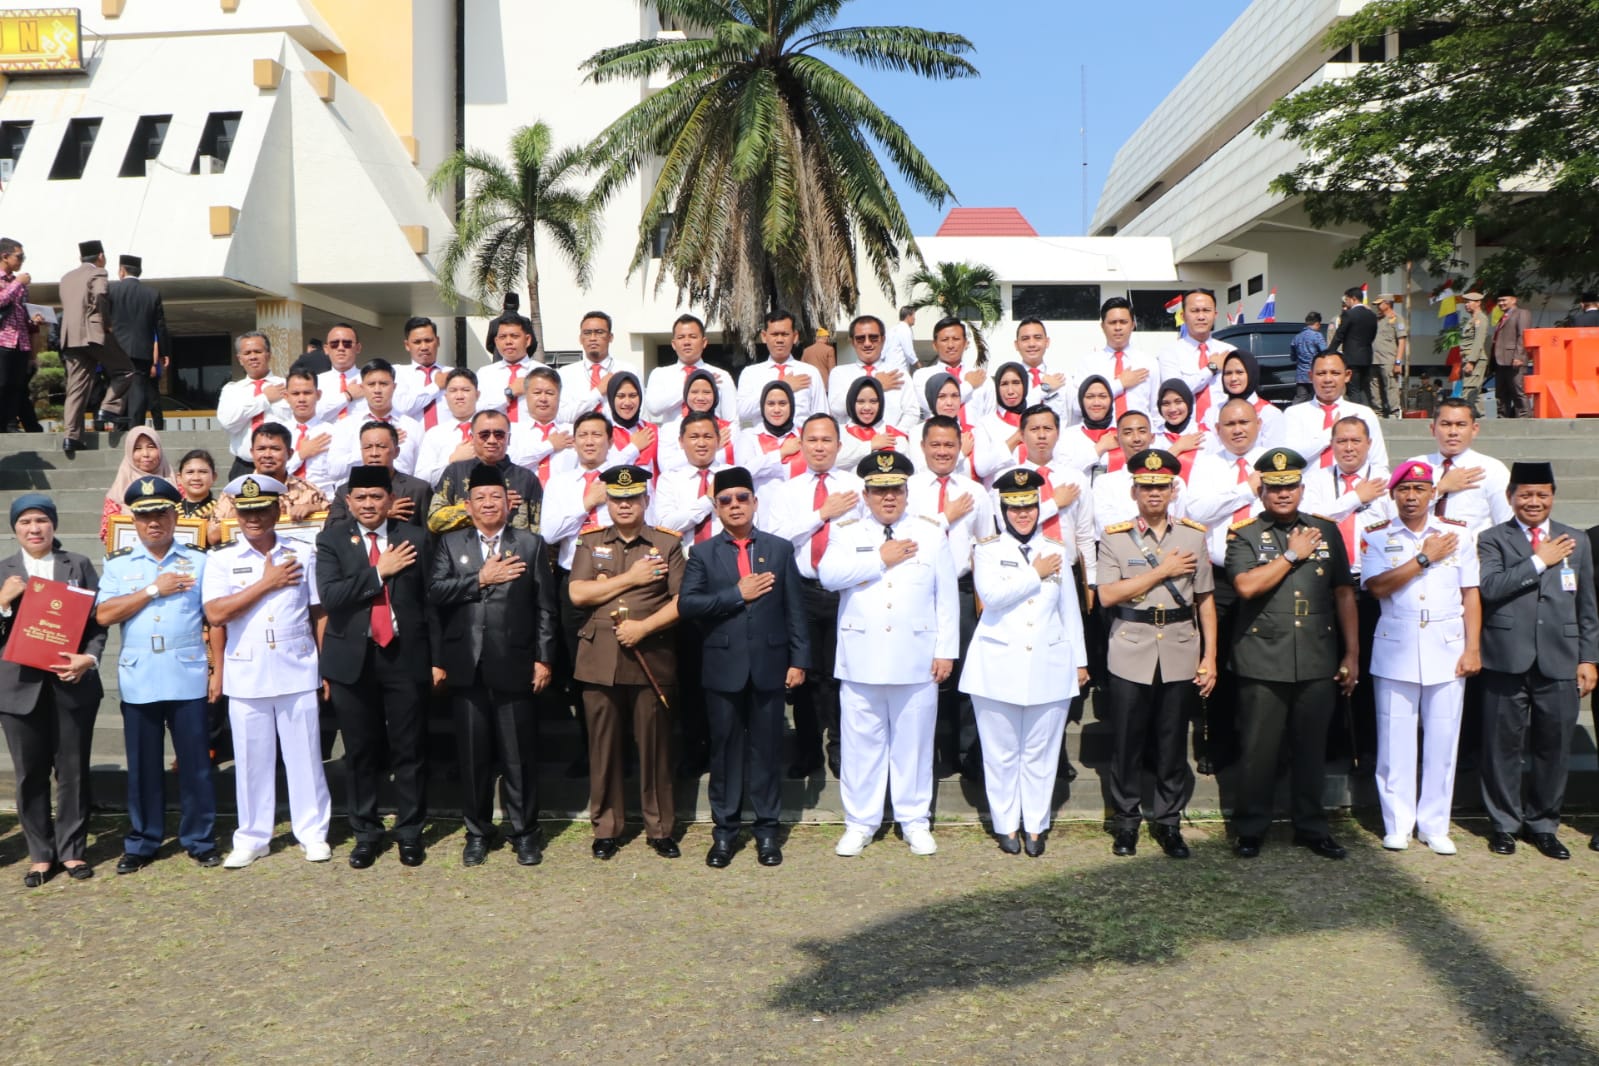 Jelang hari ulang tahun Provinsi Lampung ke-59 pada 18 Maret 2023, Pemprov Lampung menggelar sejumlah kegiatan